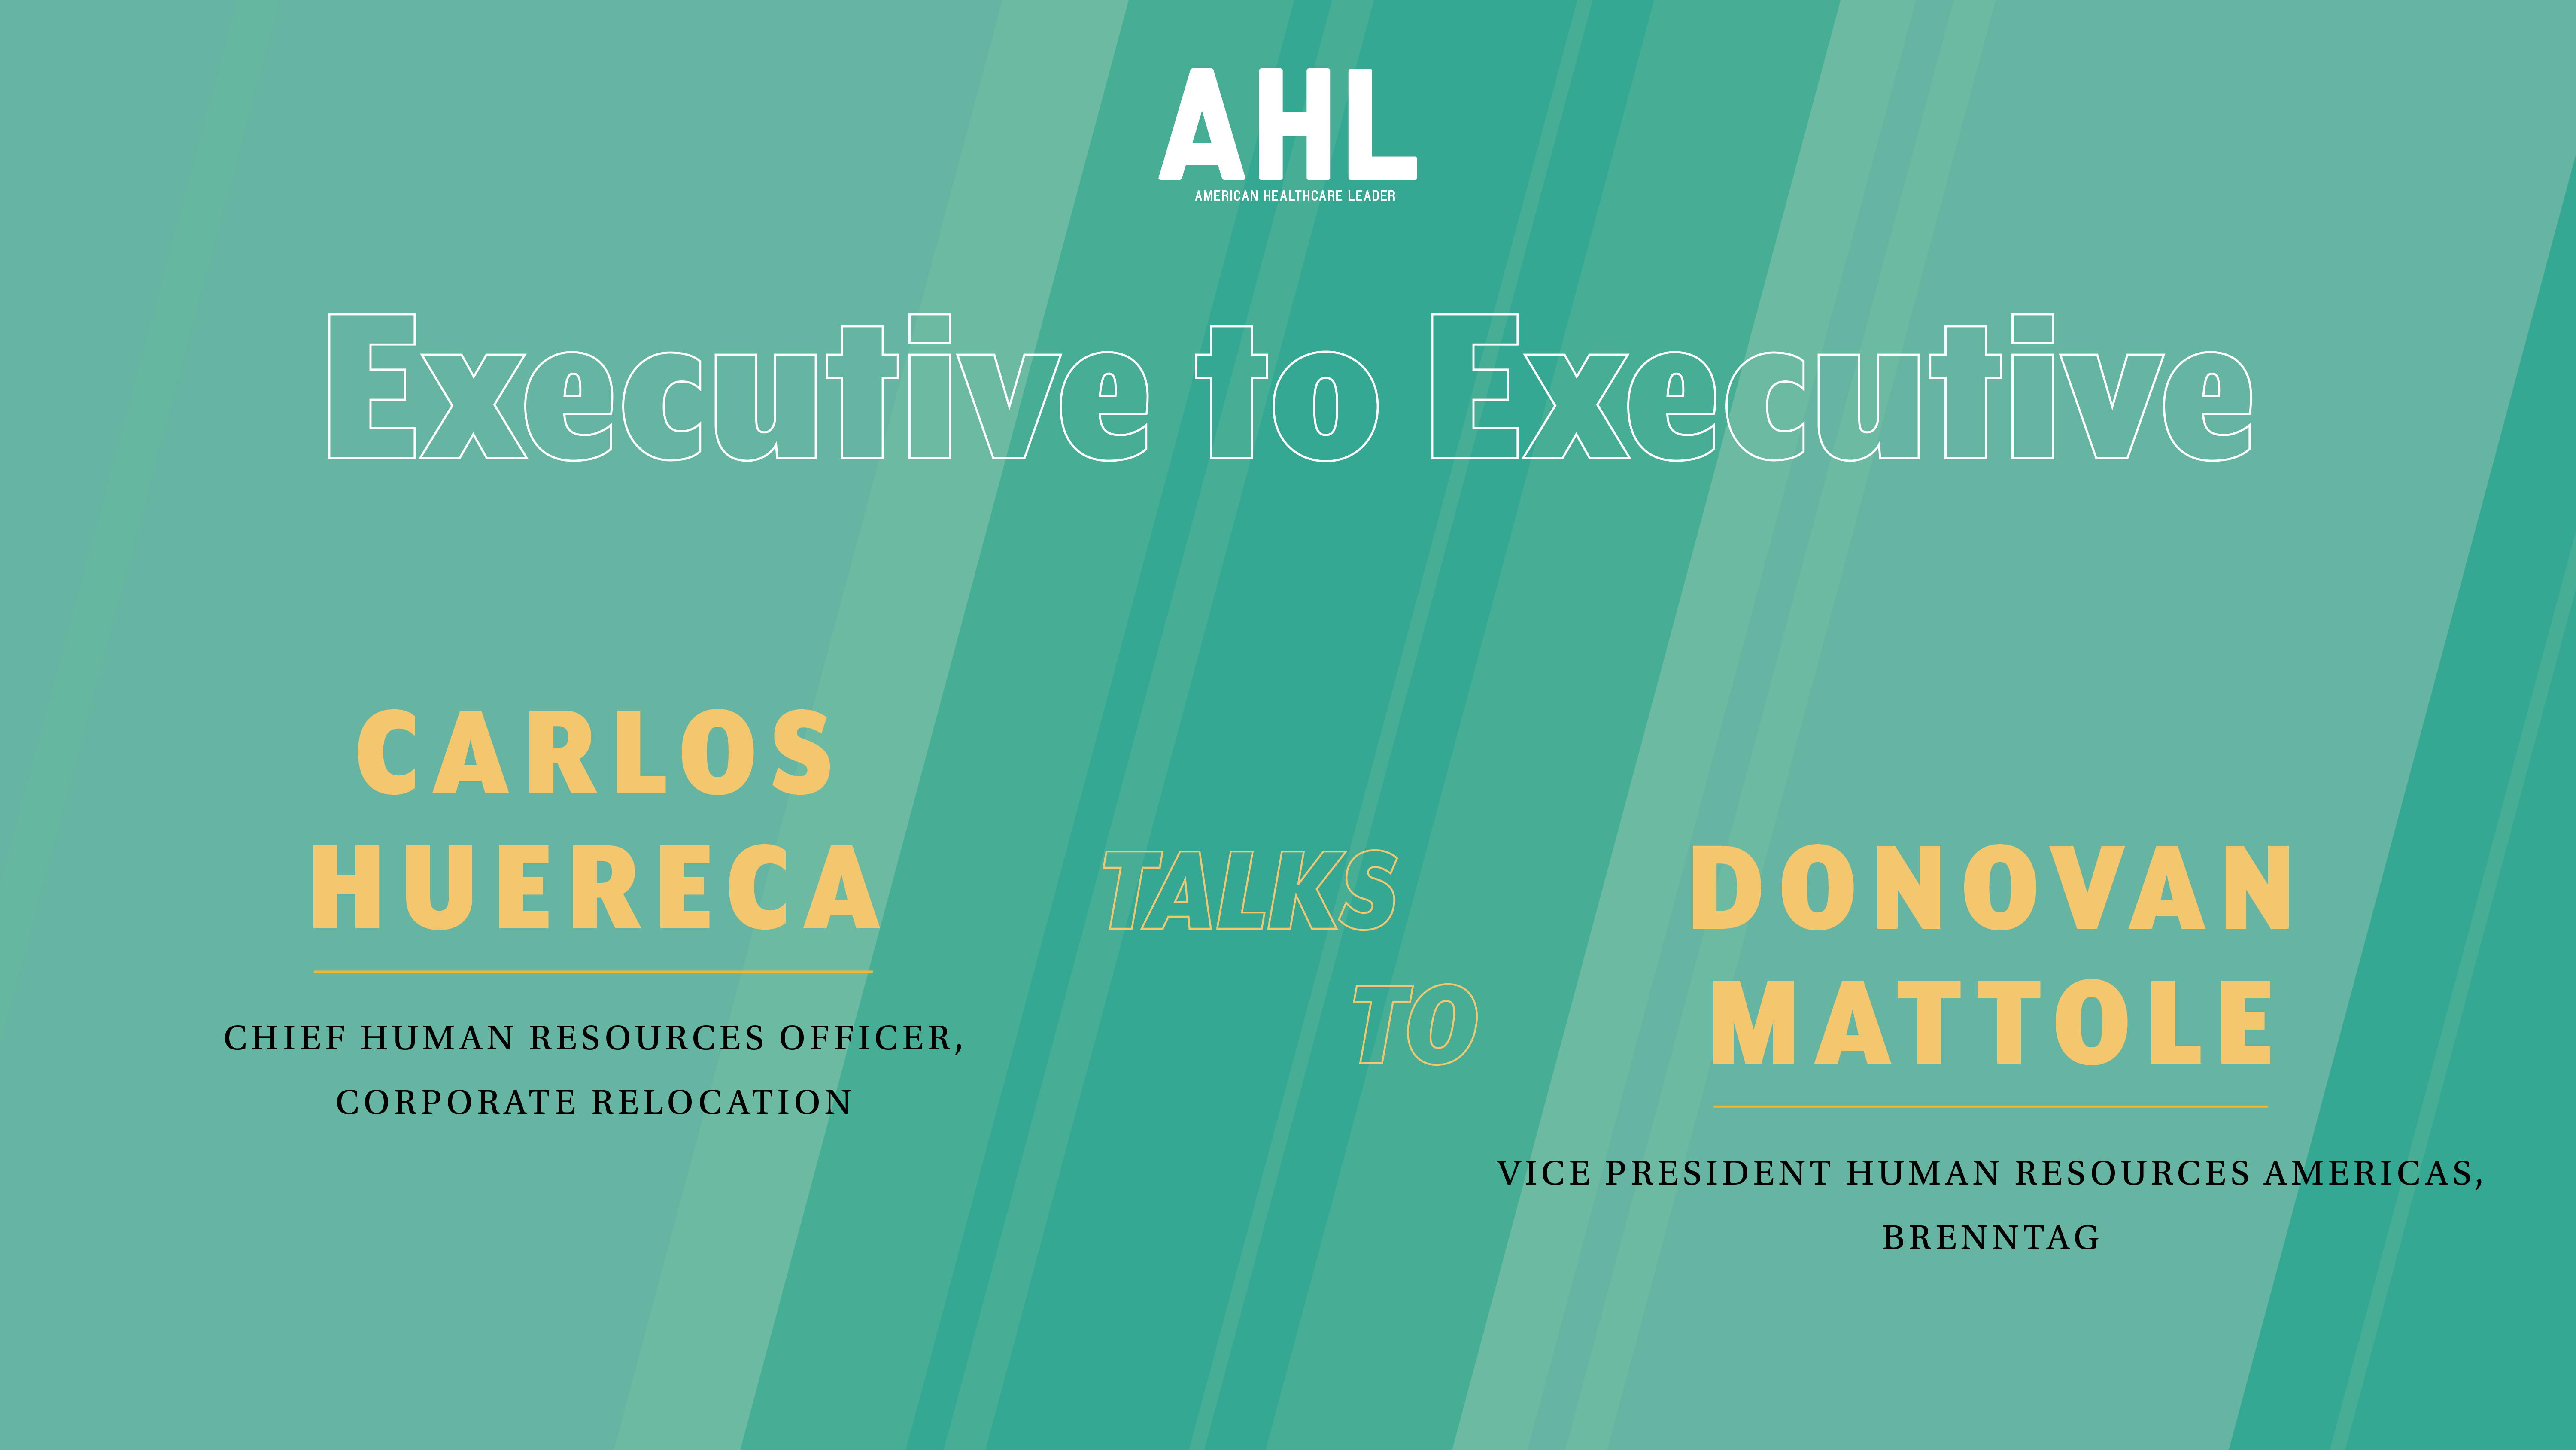 Executive-to-Executive Interview: Carlos Huereca and Donovan Mattole